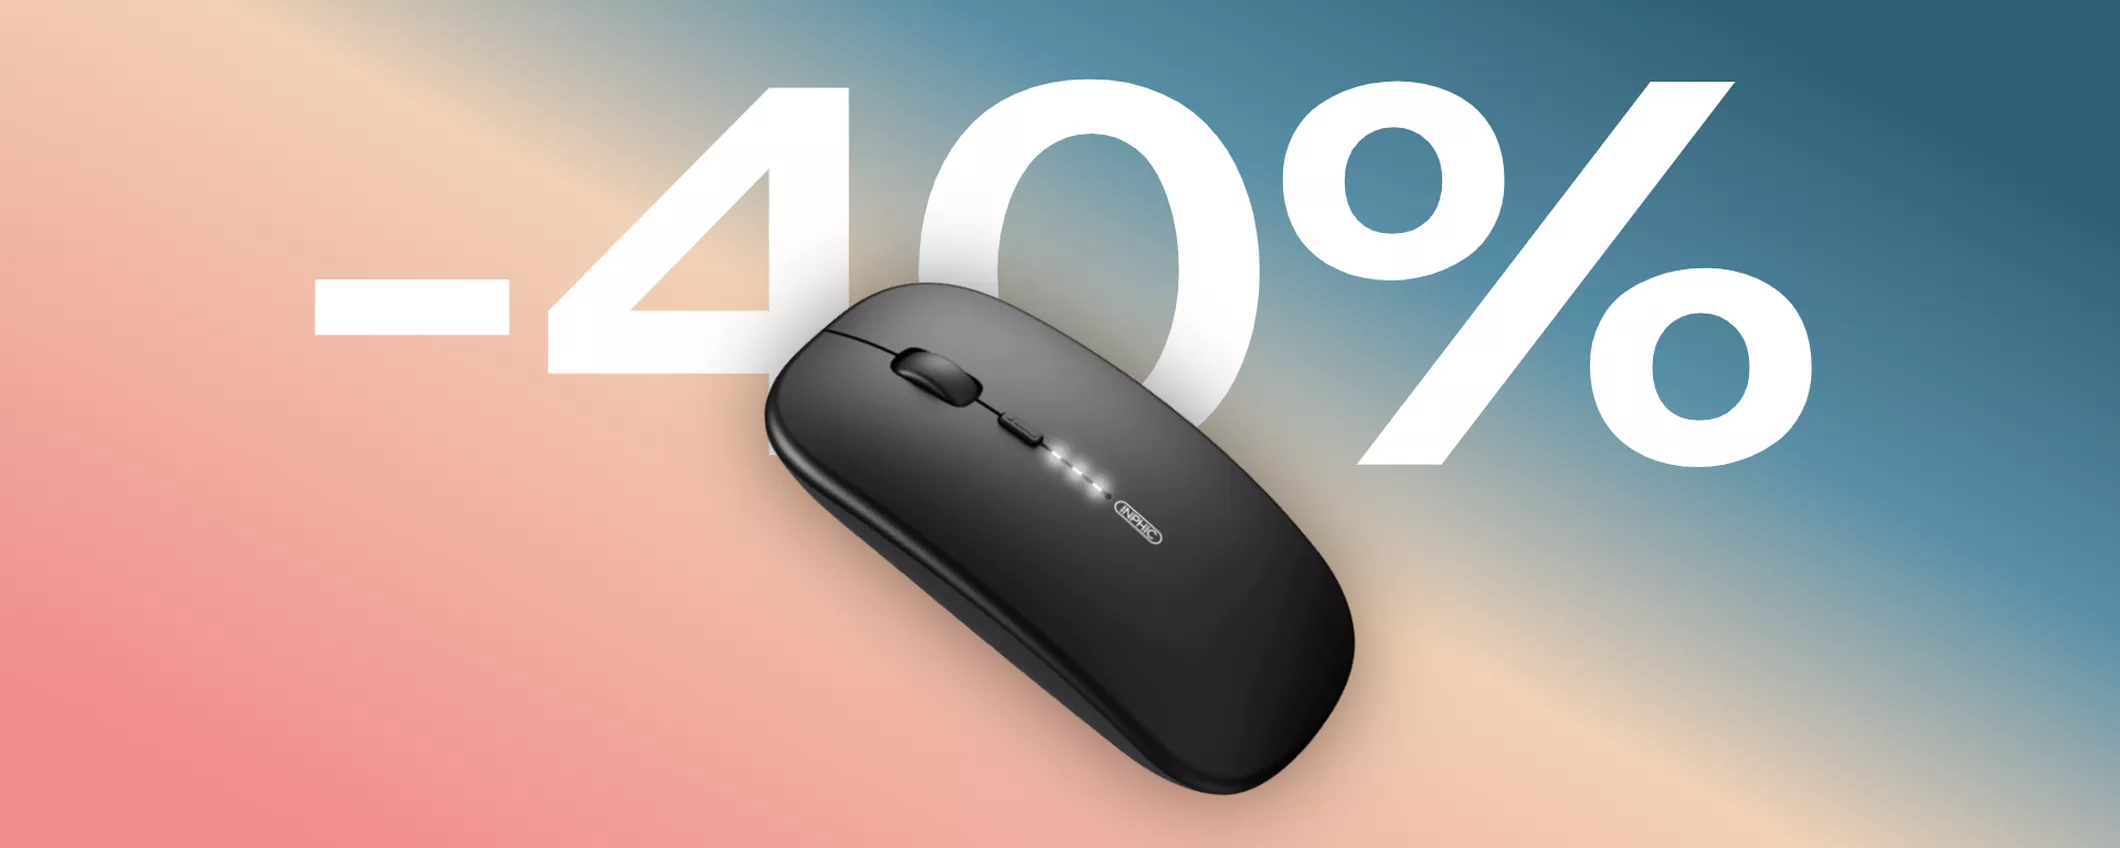 Mouse wireless perfetto per Mac e PC: sottile, silenzioso e... in sconto (-40%)